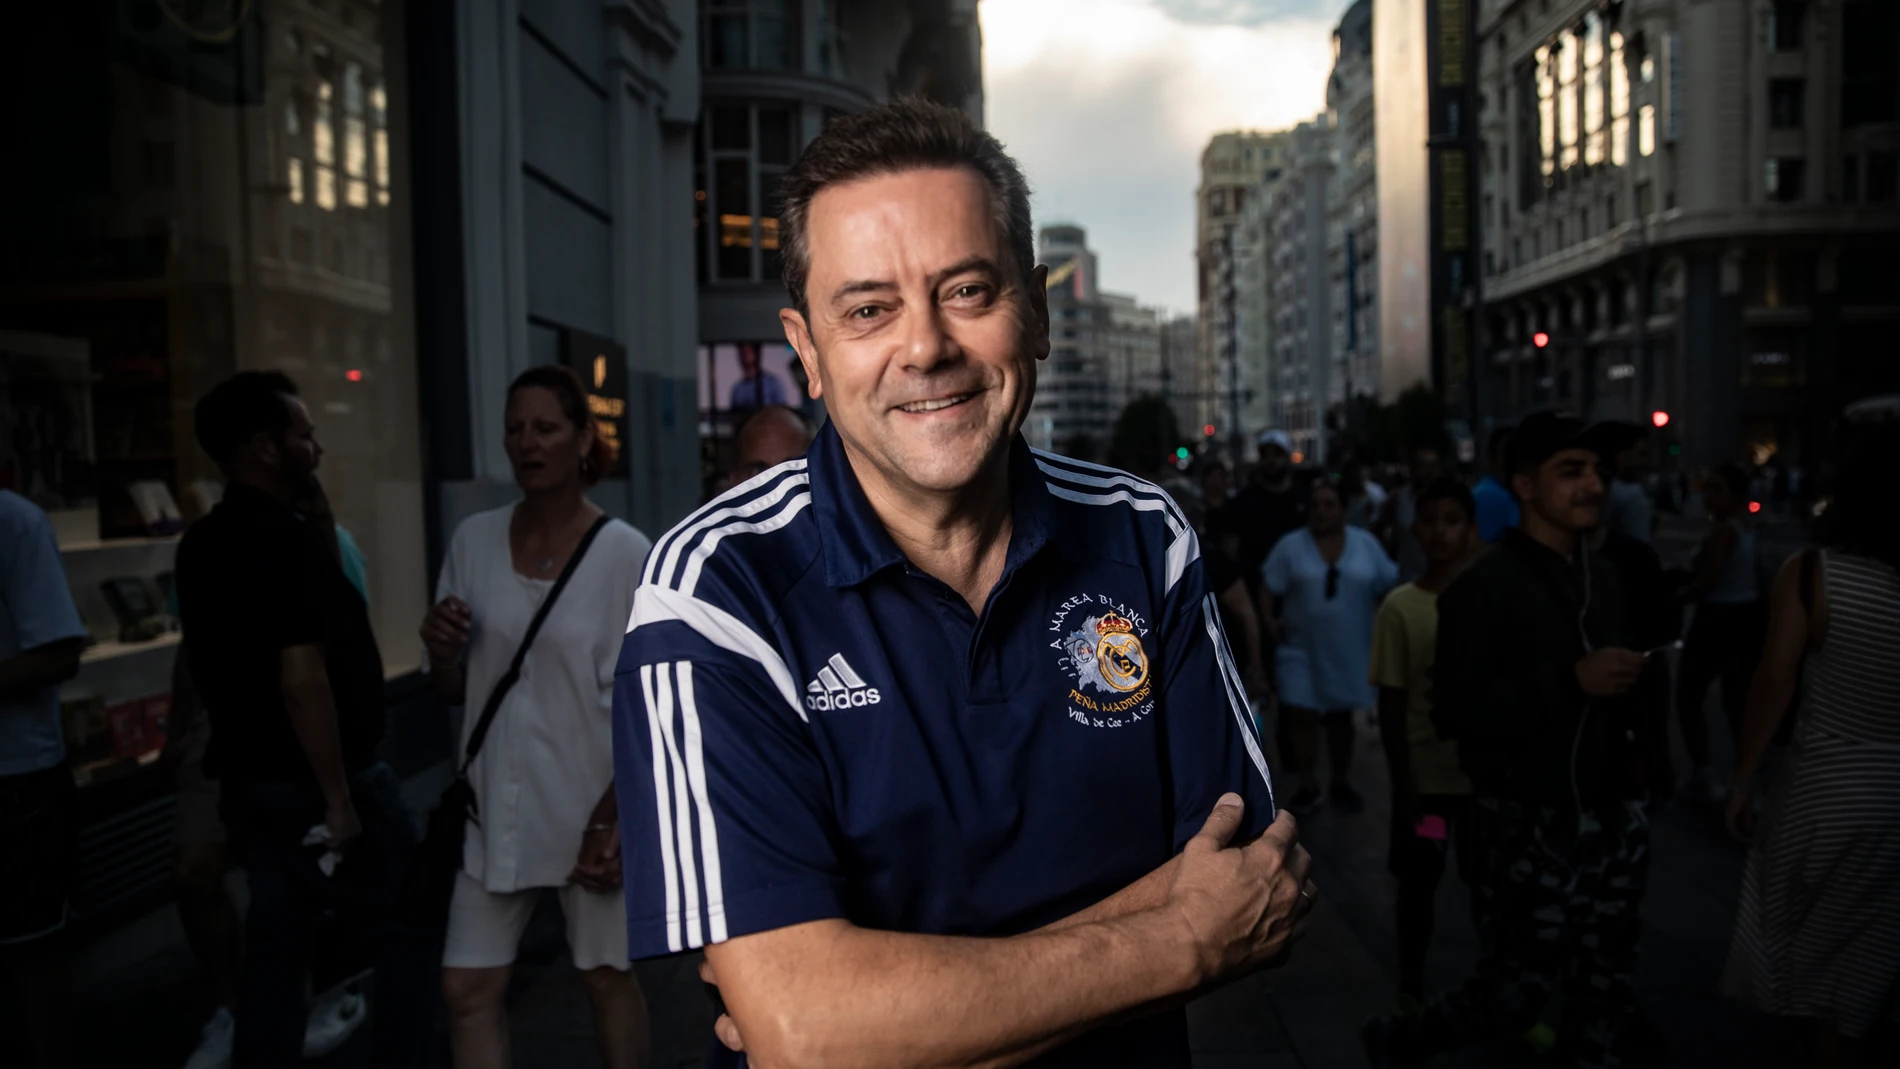 El periodista deportivo Tomás Roncero en la Gran Vía de Madrid